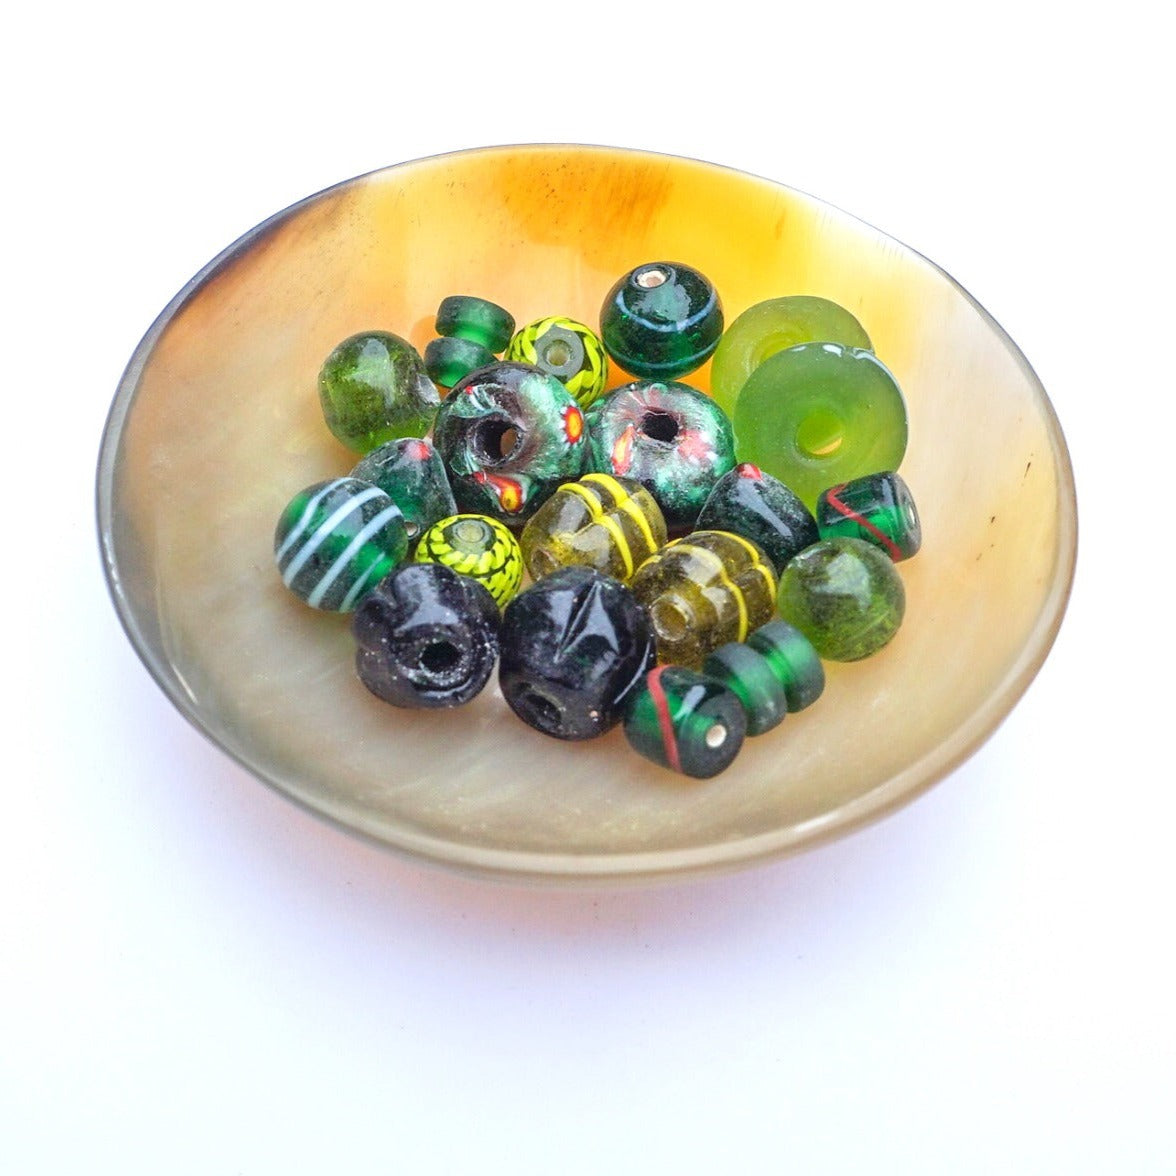 Blandning av olika handgjorda glaspärlor i gröna toner med eller utan dekor i andra färger. Pärlorna är kopior av olika fynd från vikingatiden. Pärlorna är olika i fomren och några är däckformade, andra är runda. Det är även en blandning av milifioripärlor och pärlor med pålagda enklare mönster.